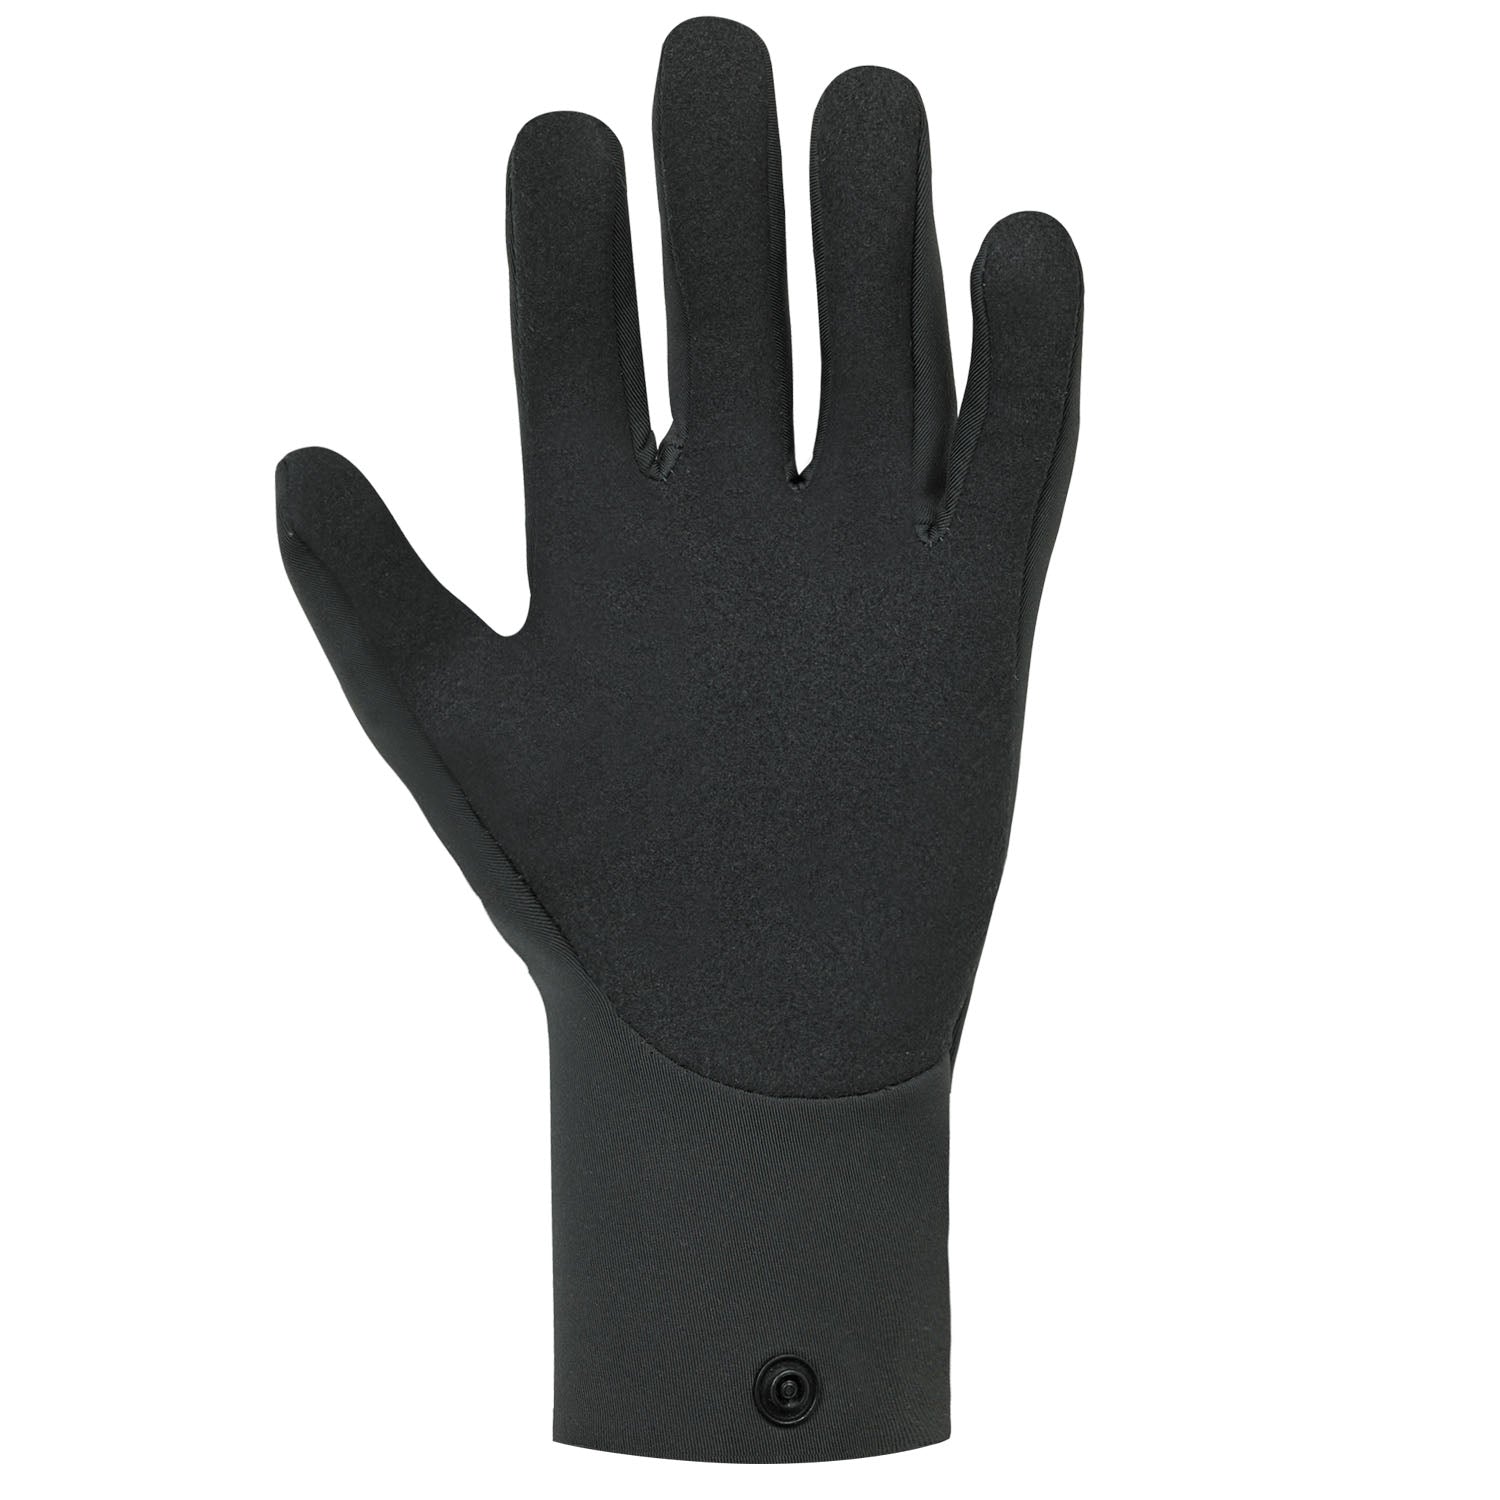 Paddling Gloves for Canoeing & Kayaking